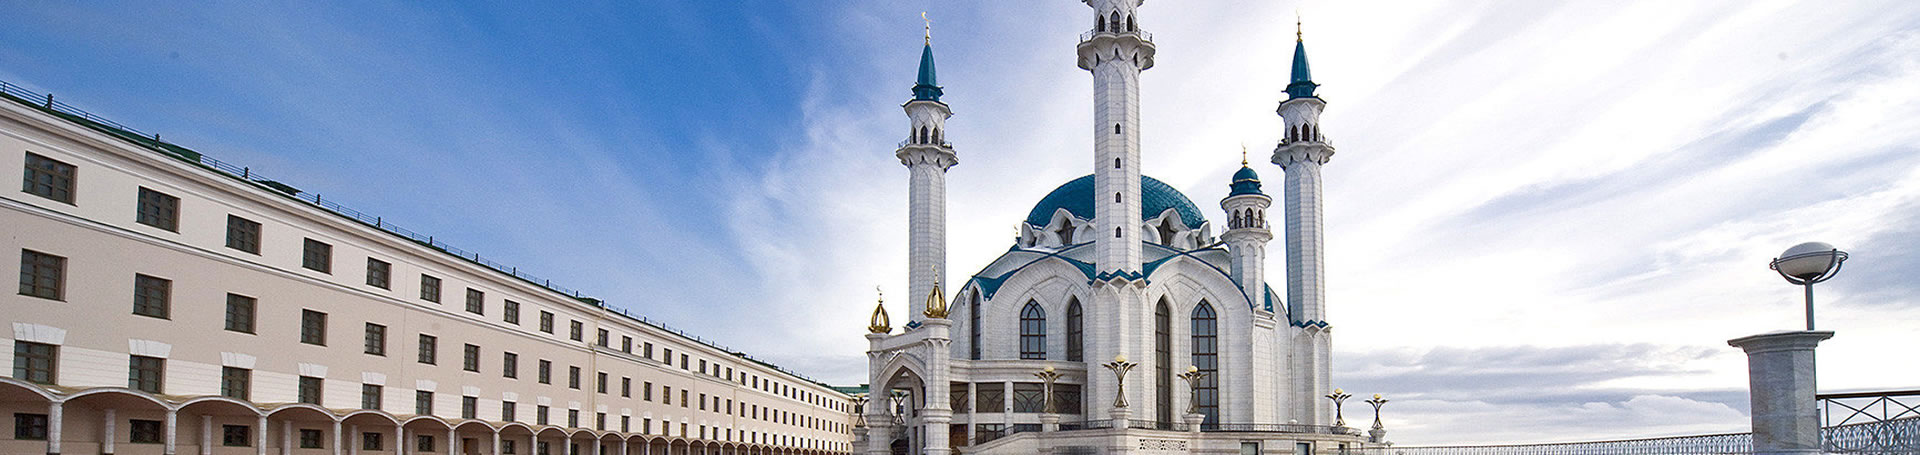 زیبا ترین مساجد روسیه